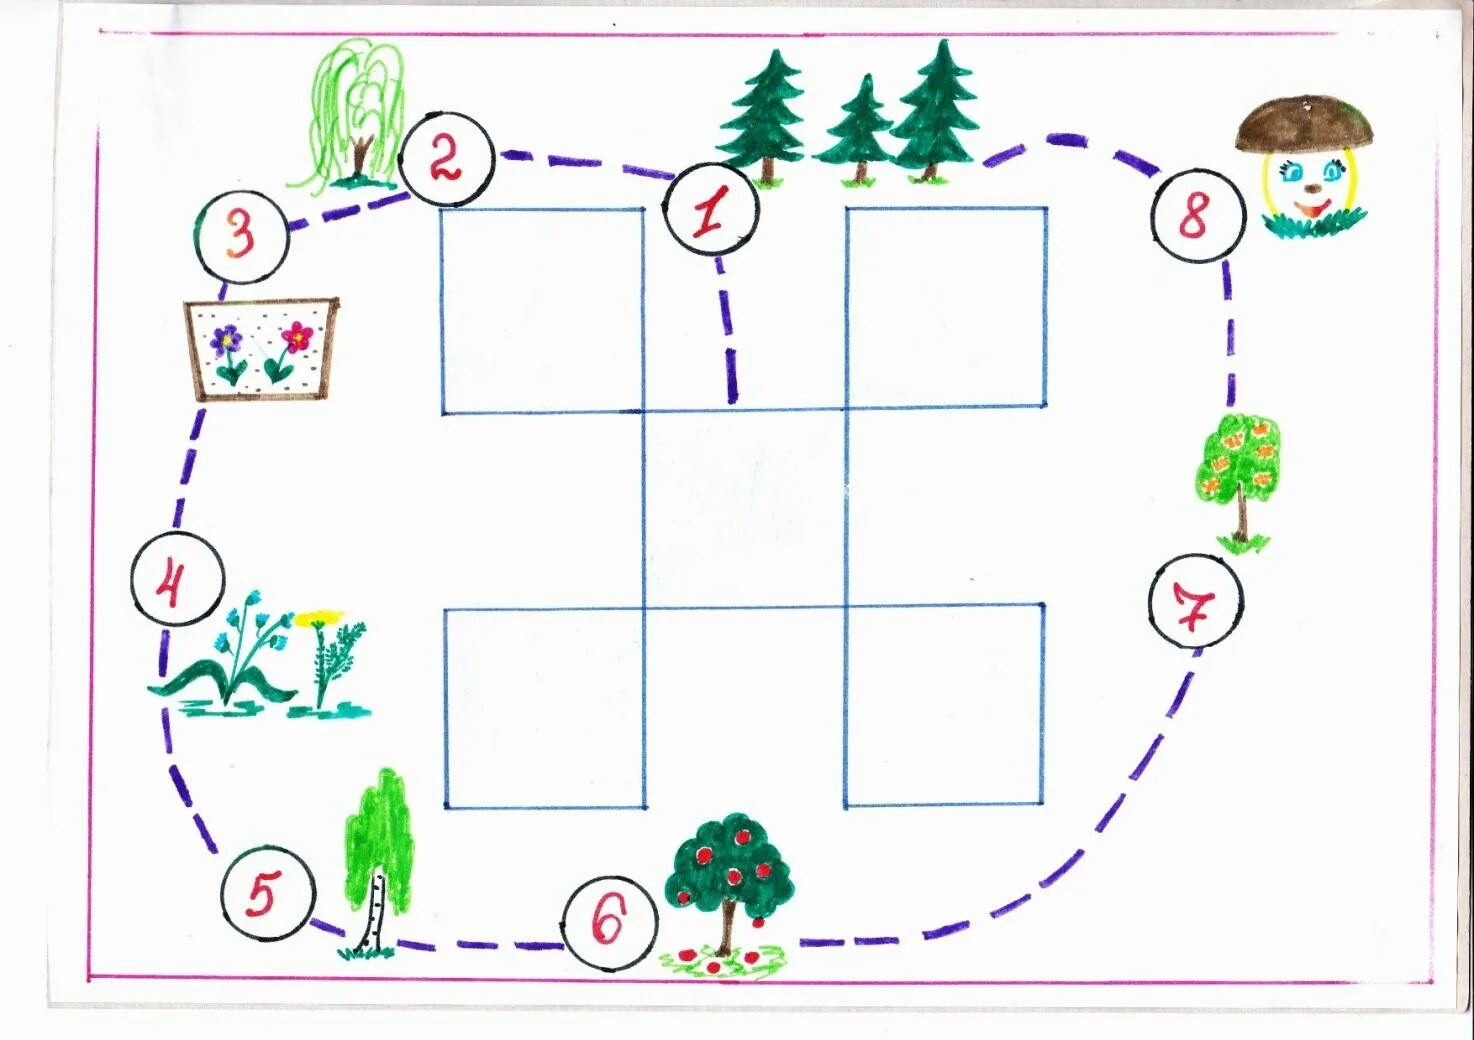 План схема экологической тропы в ДОУ. Карта экологической тропы в ДОУ. Маршрутная карта экологической тропы. Схема экологической тропы в детском саду рисунок.